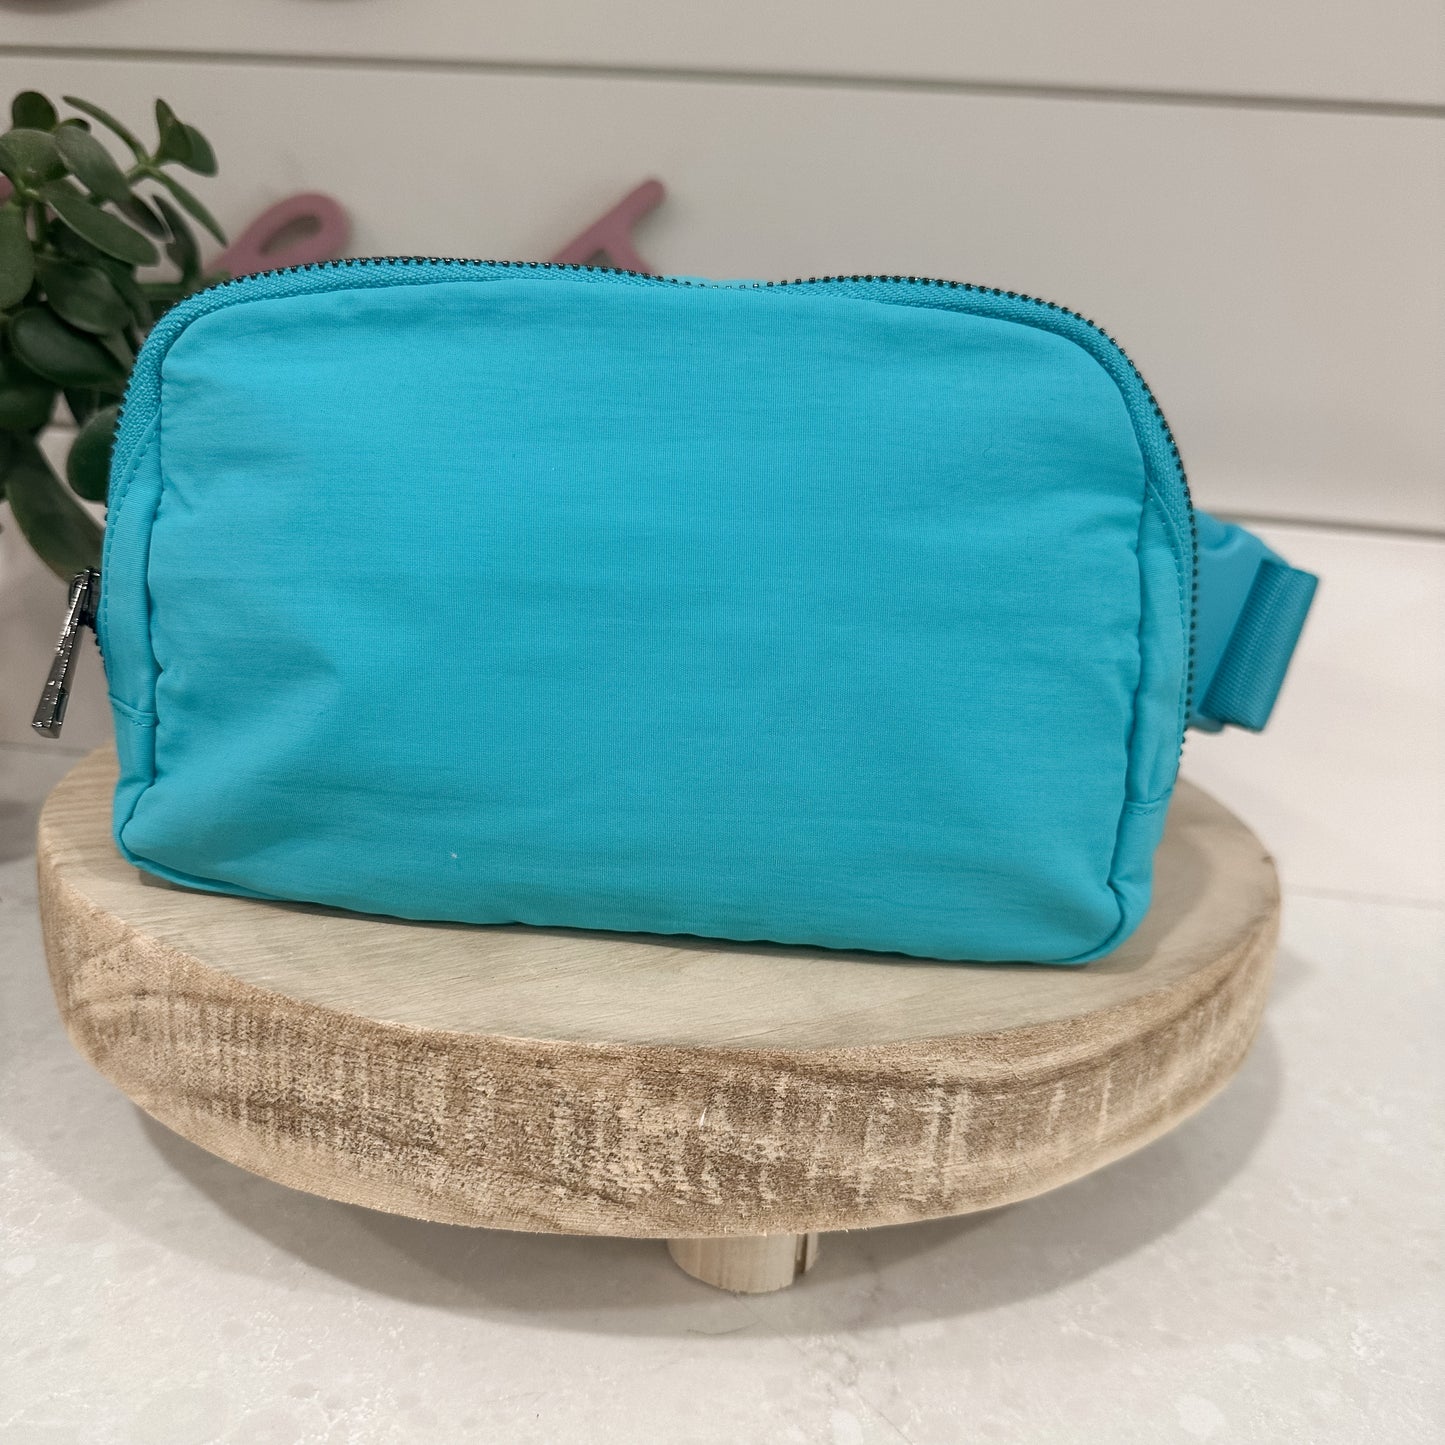 Aqua sidekick bag